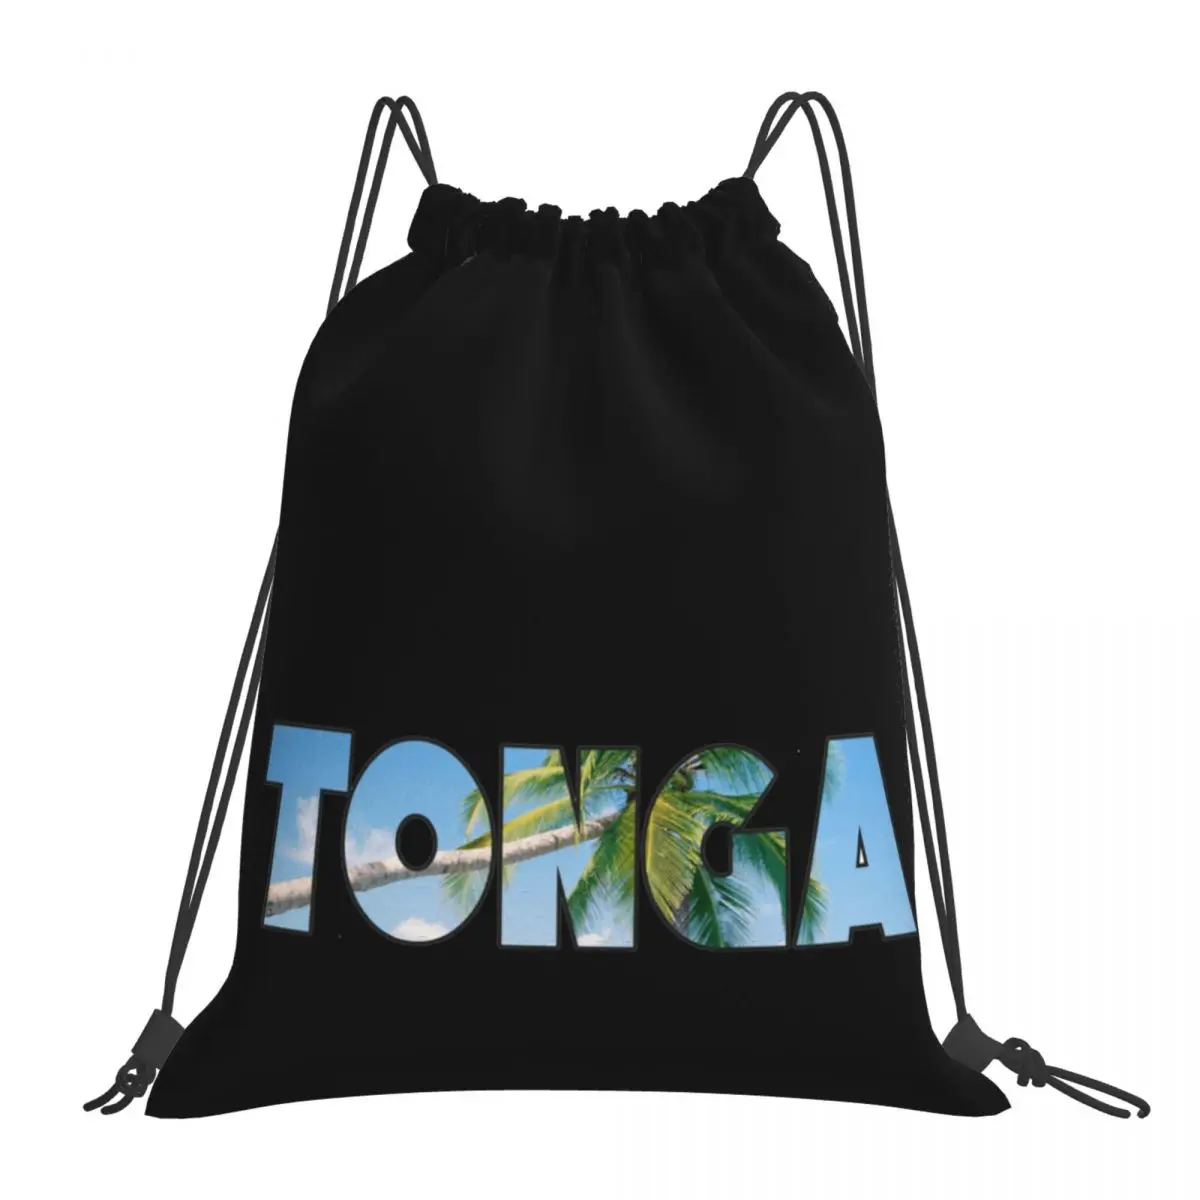 

Сумки на шнурке, сумка для спортзала, Tonga volcanoпраздничный пляжный дизайнерский милый рюкзак с лавовым рисунком пальмы, рюкзак с юмором